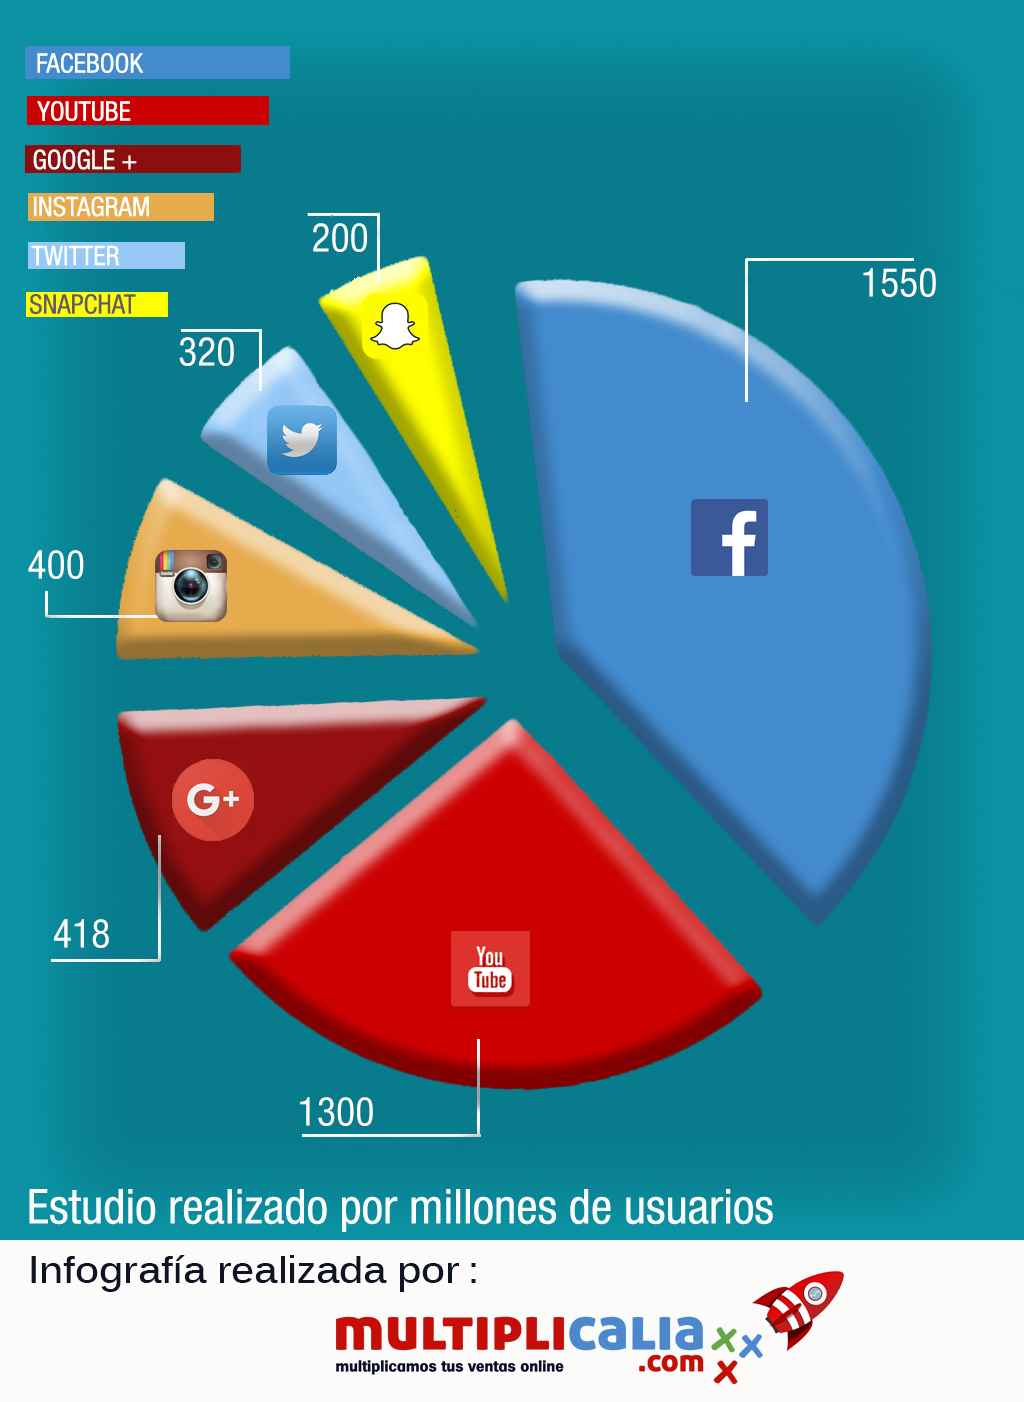 las 10 redes sociales mas usadas en espana